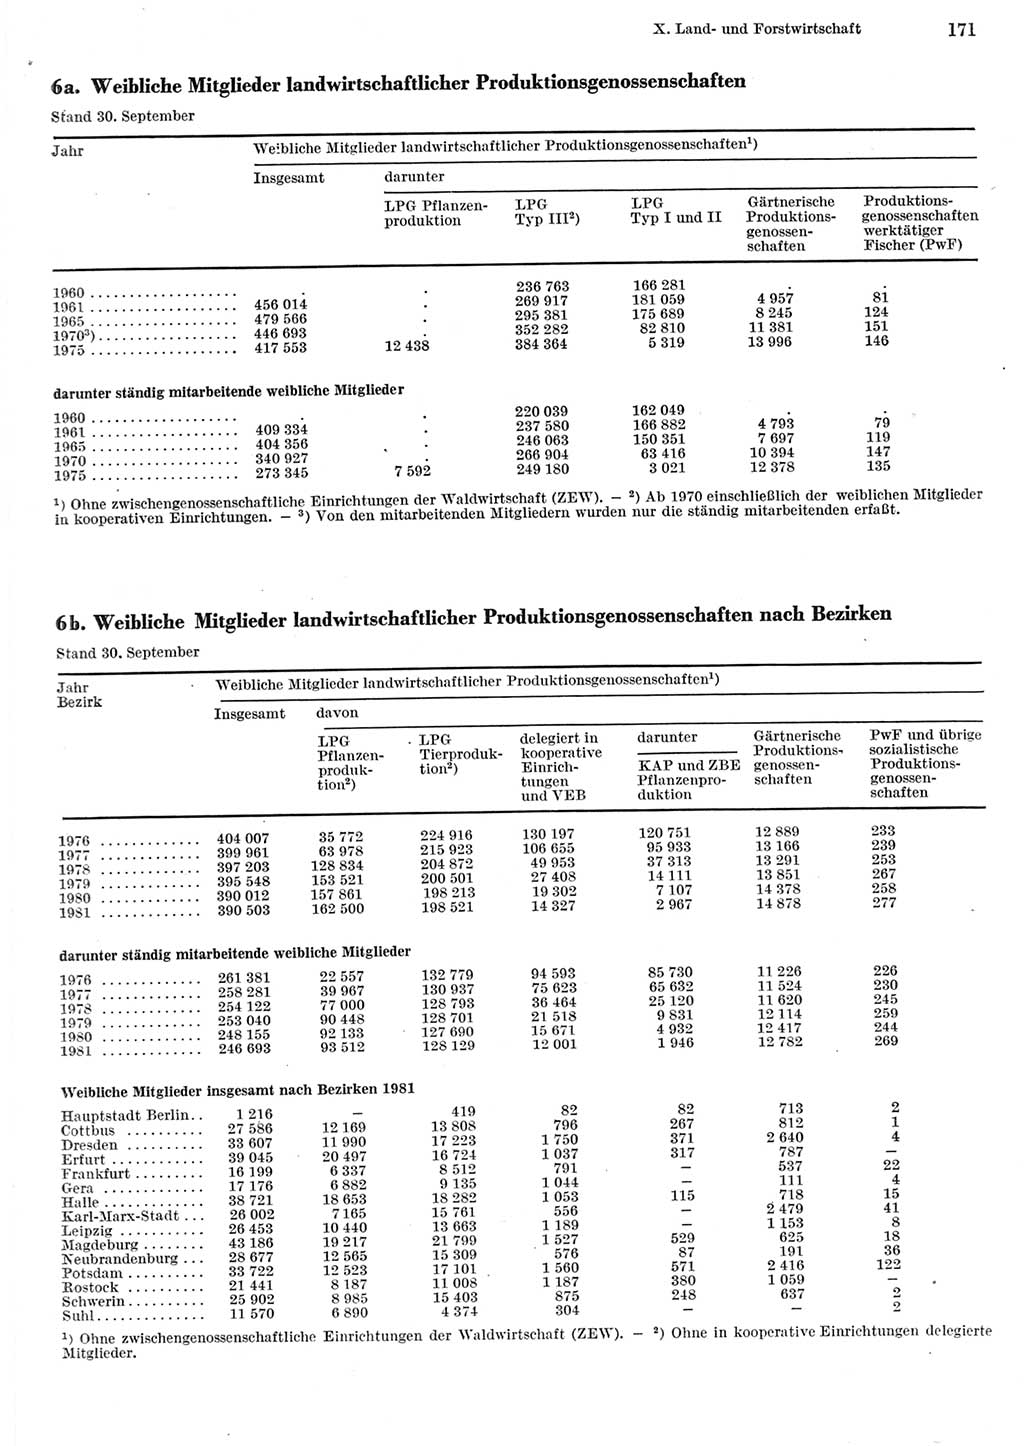 Statistisches Jahrbuch der Deutschen Demokratischen Republik (DDR) 1982, Seite 171 (Stat. Jb. DDR 1982, S. 171)